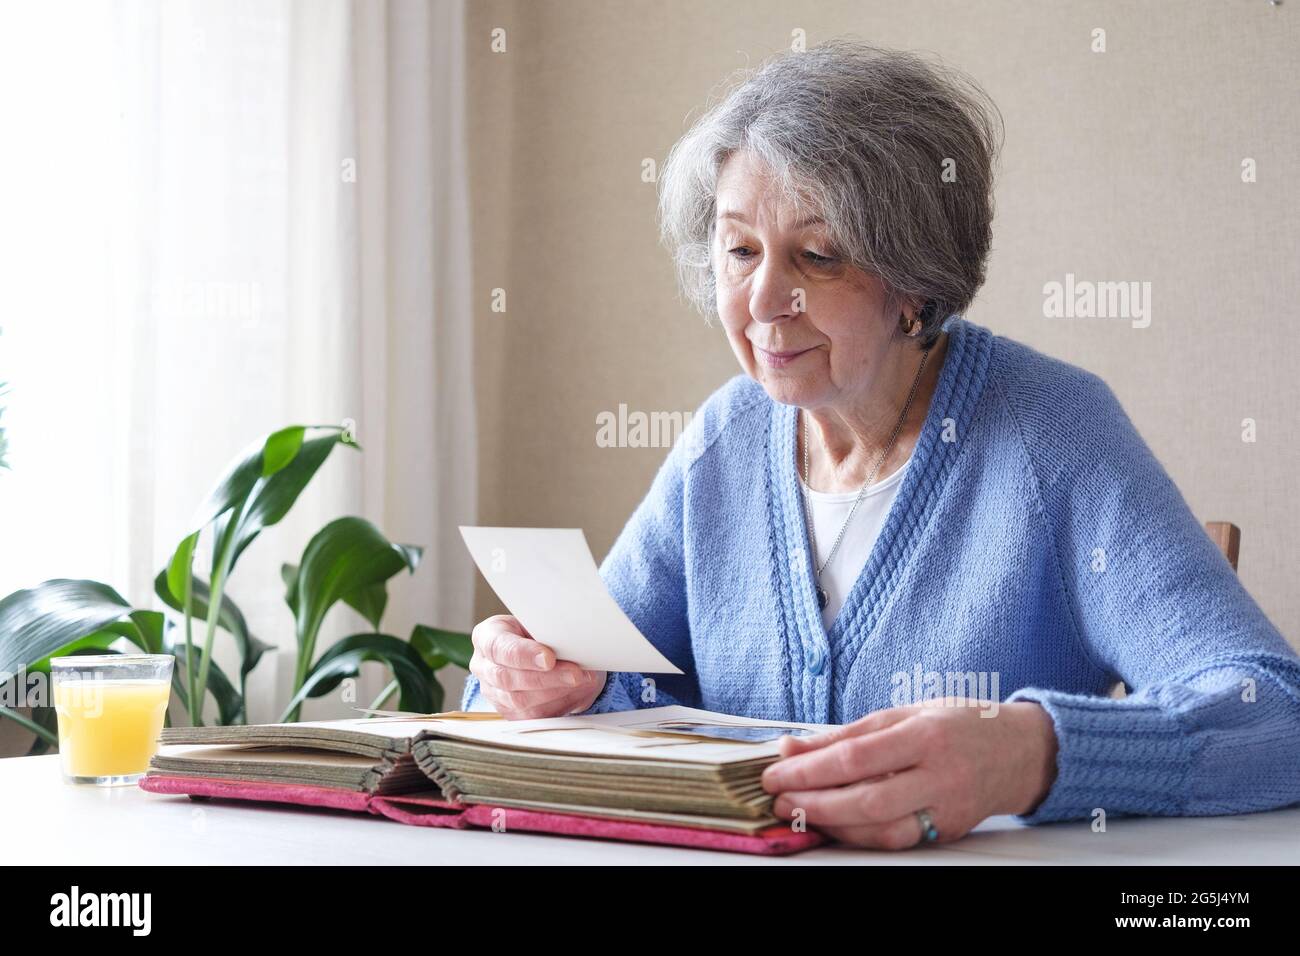 Eine ältere Frau mit Nostalgie betrachtet alte Fotos in einem Fotoalbum oder Fotobuch - das Konzept von Familie und Lebenswerten und Einsamkeit im Alter Stockfoto